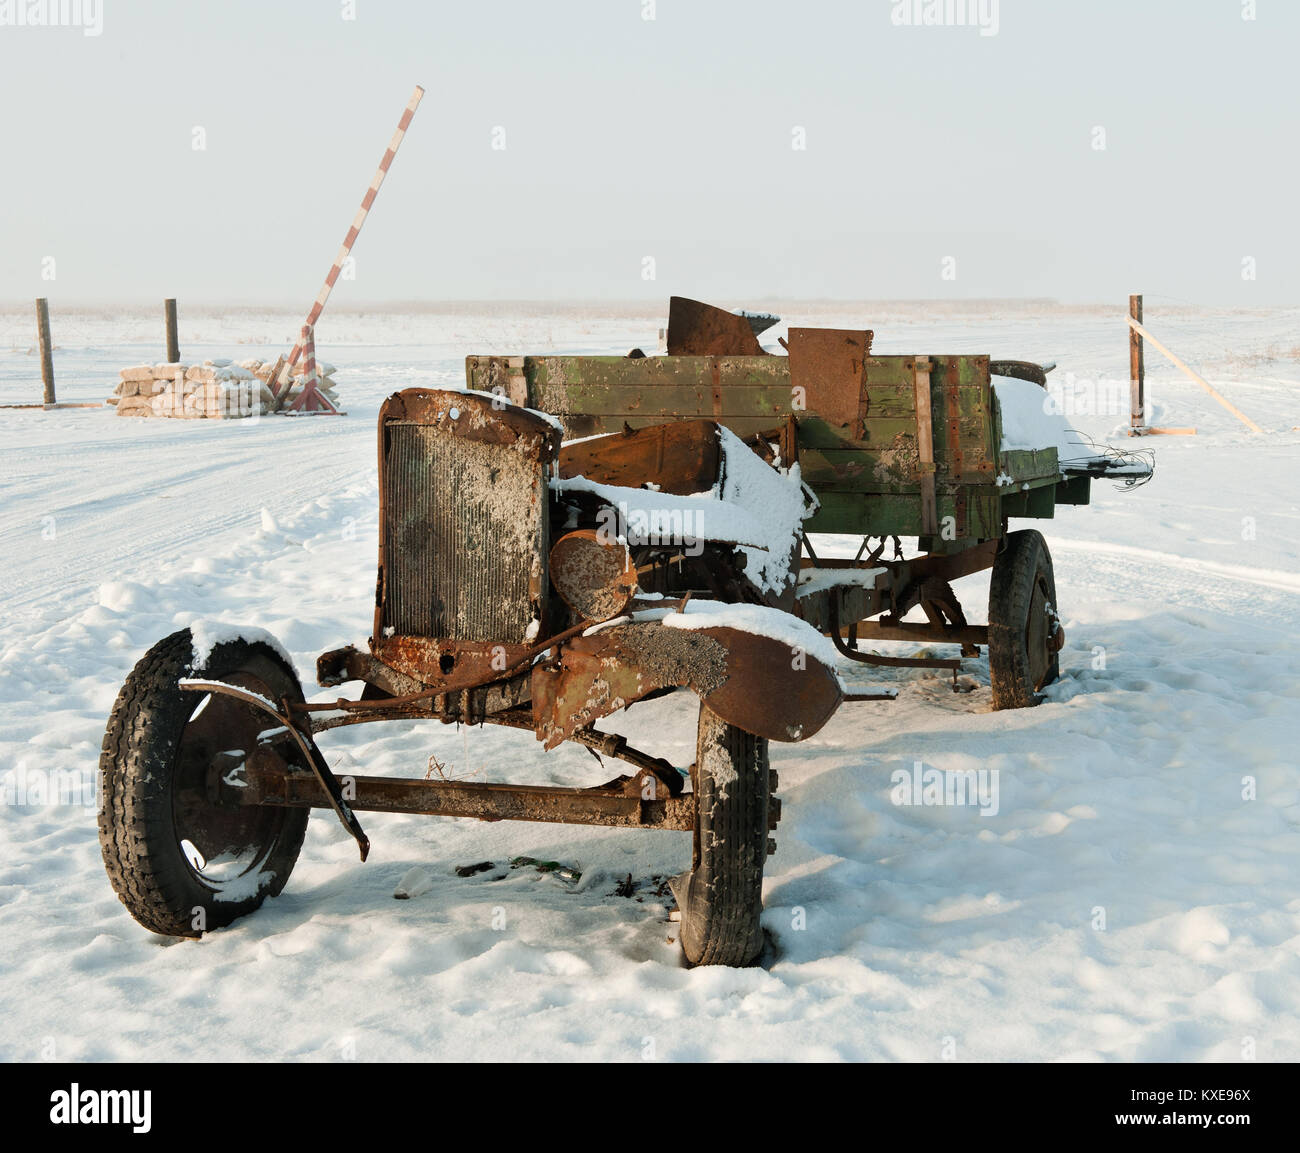 Camion brûlé la seconde guerre mondiale : vieux camion de l'armée soviétique de la DEUXIÈME GUERRE MONDIALE. À l'extérieur à l'hiver Banque D'Images